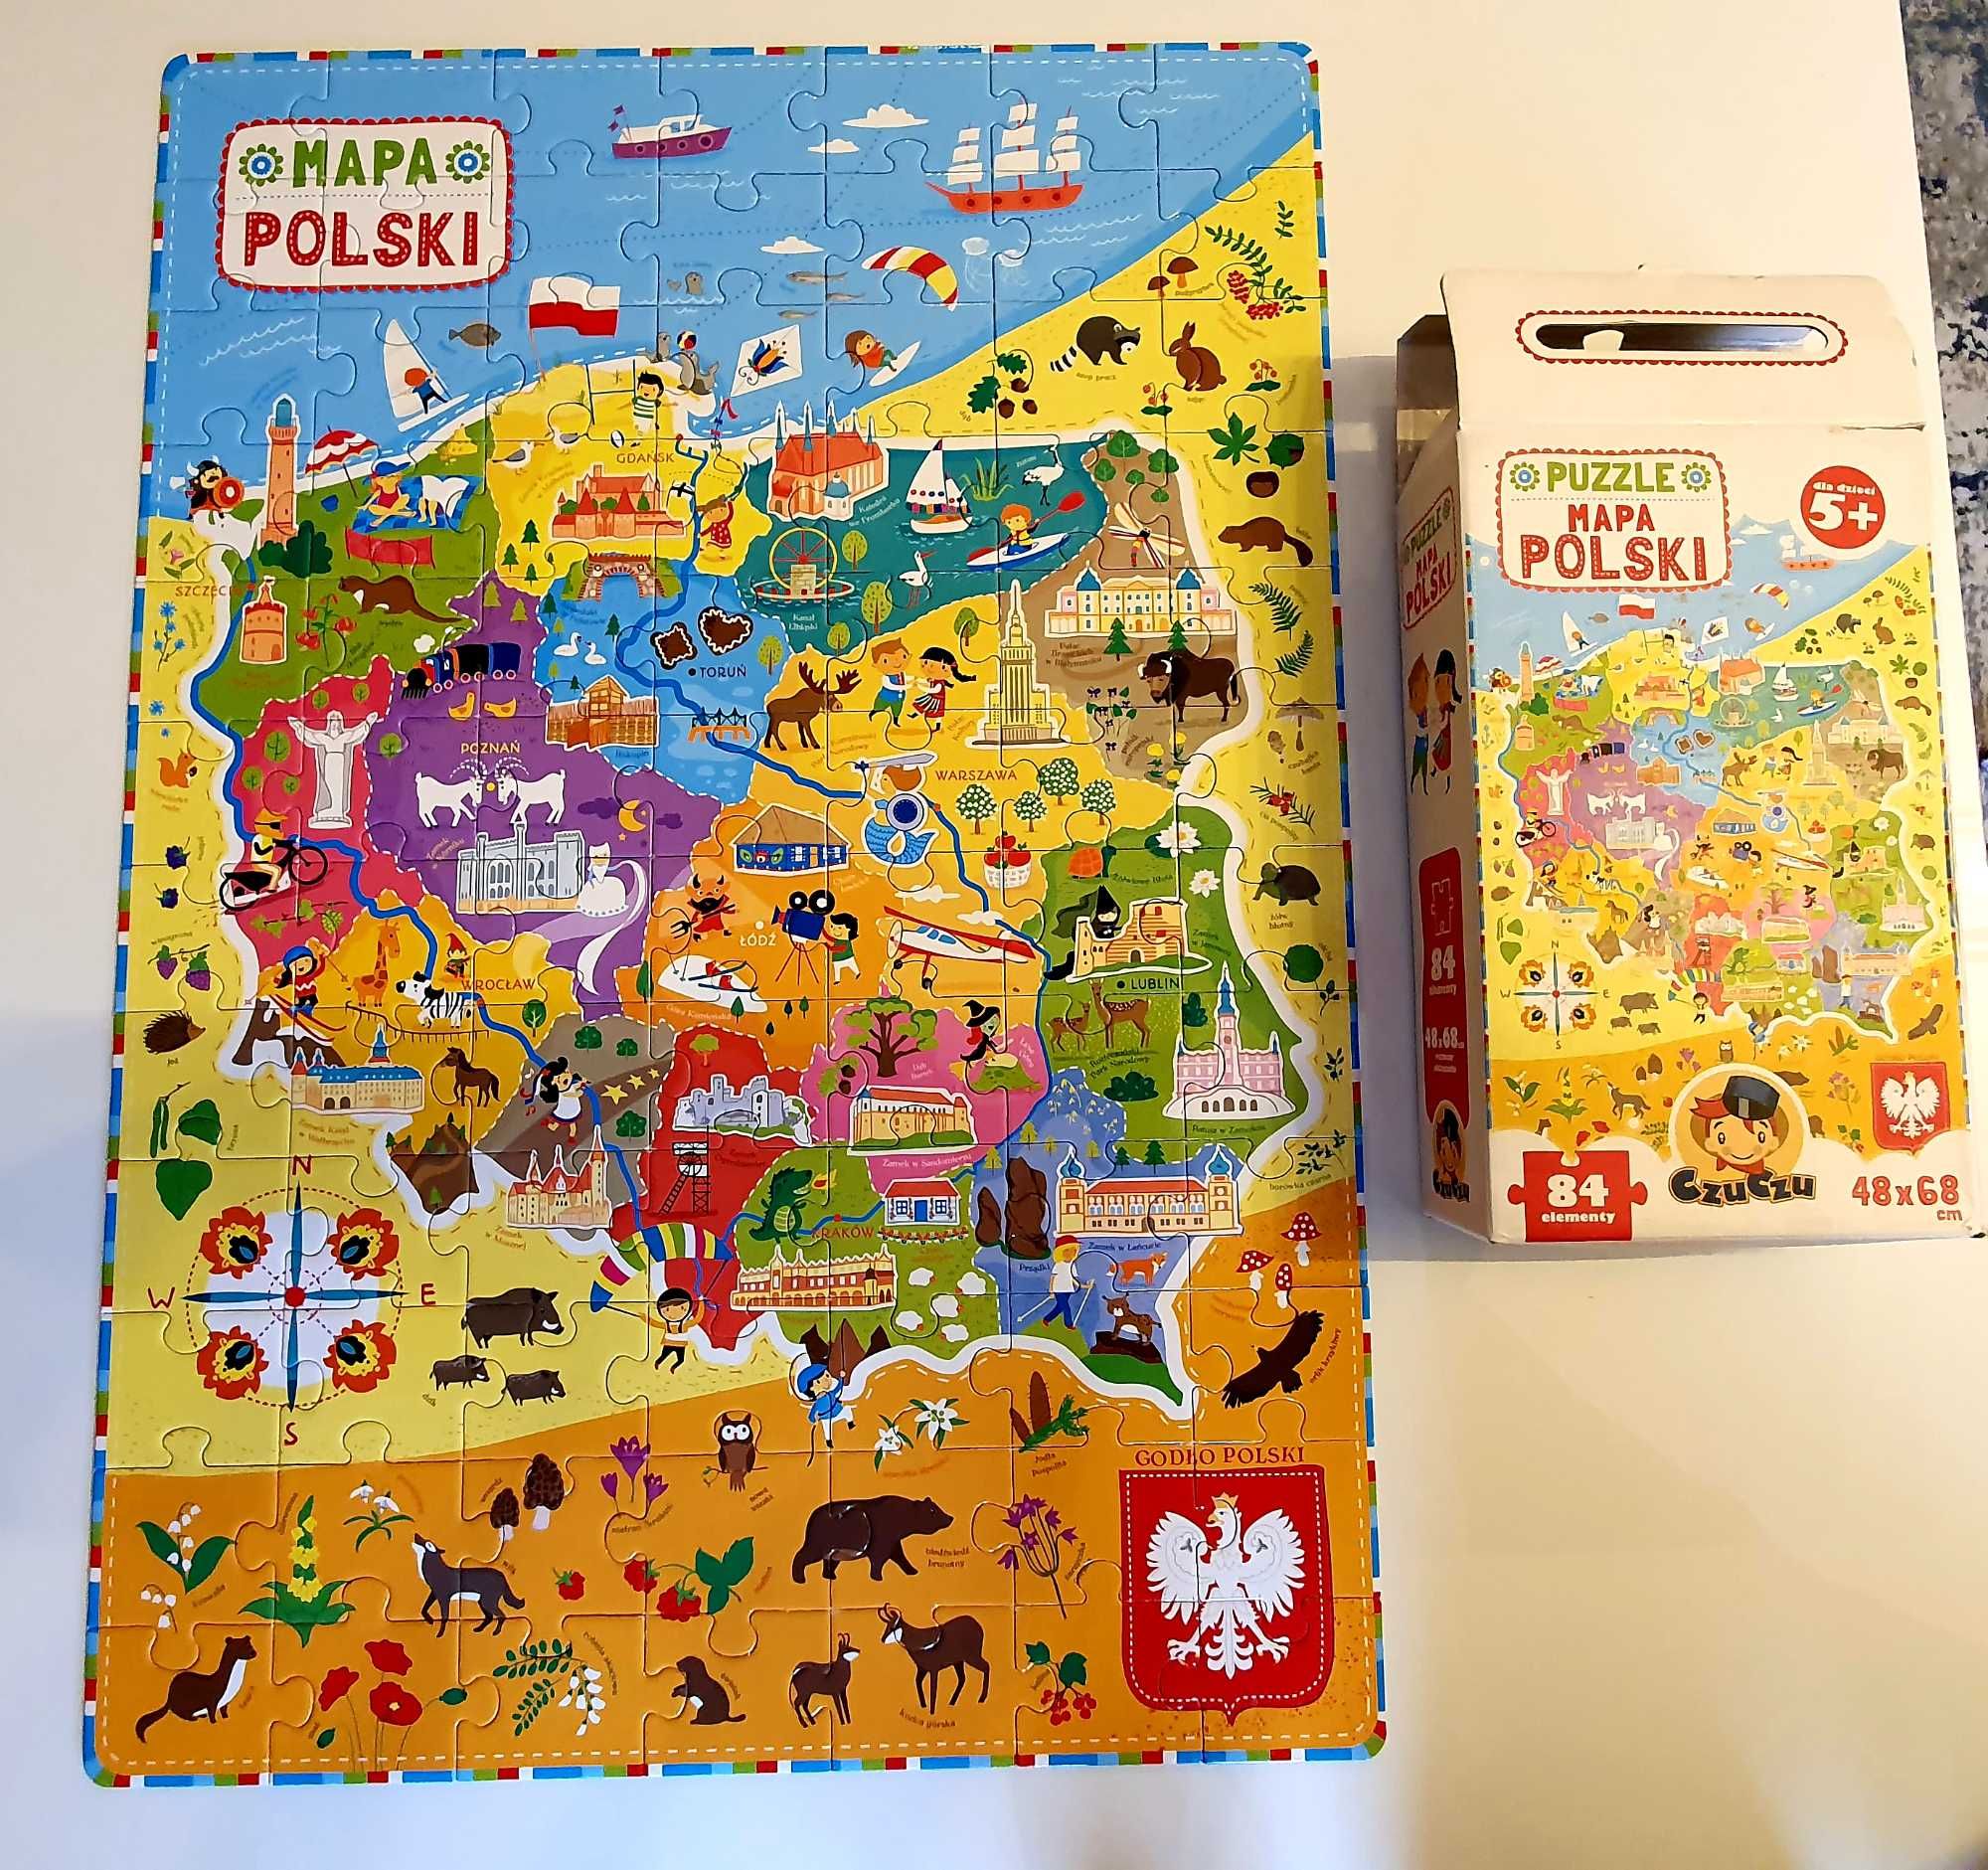 Puzzle mapa Polski - CzuCzu